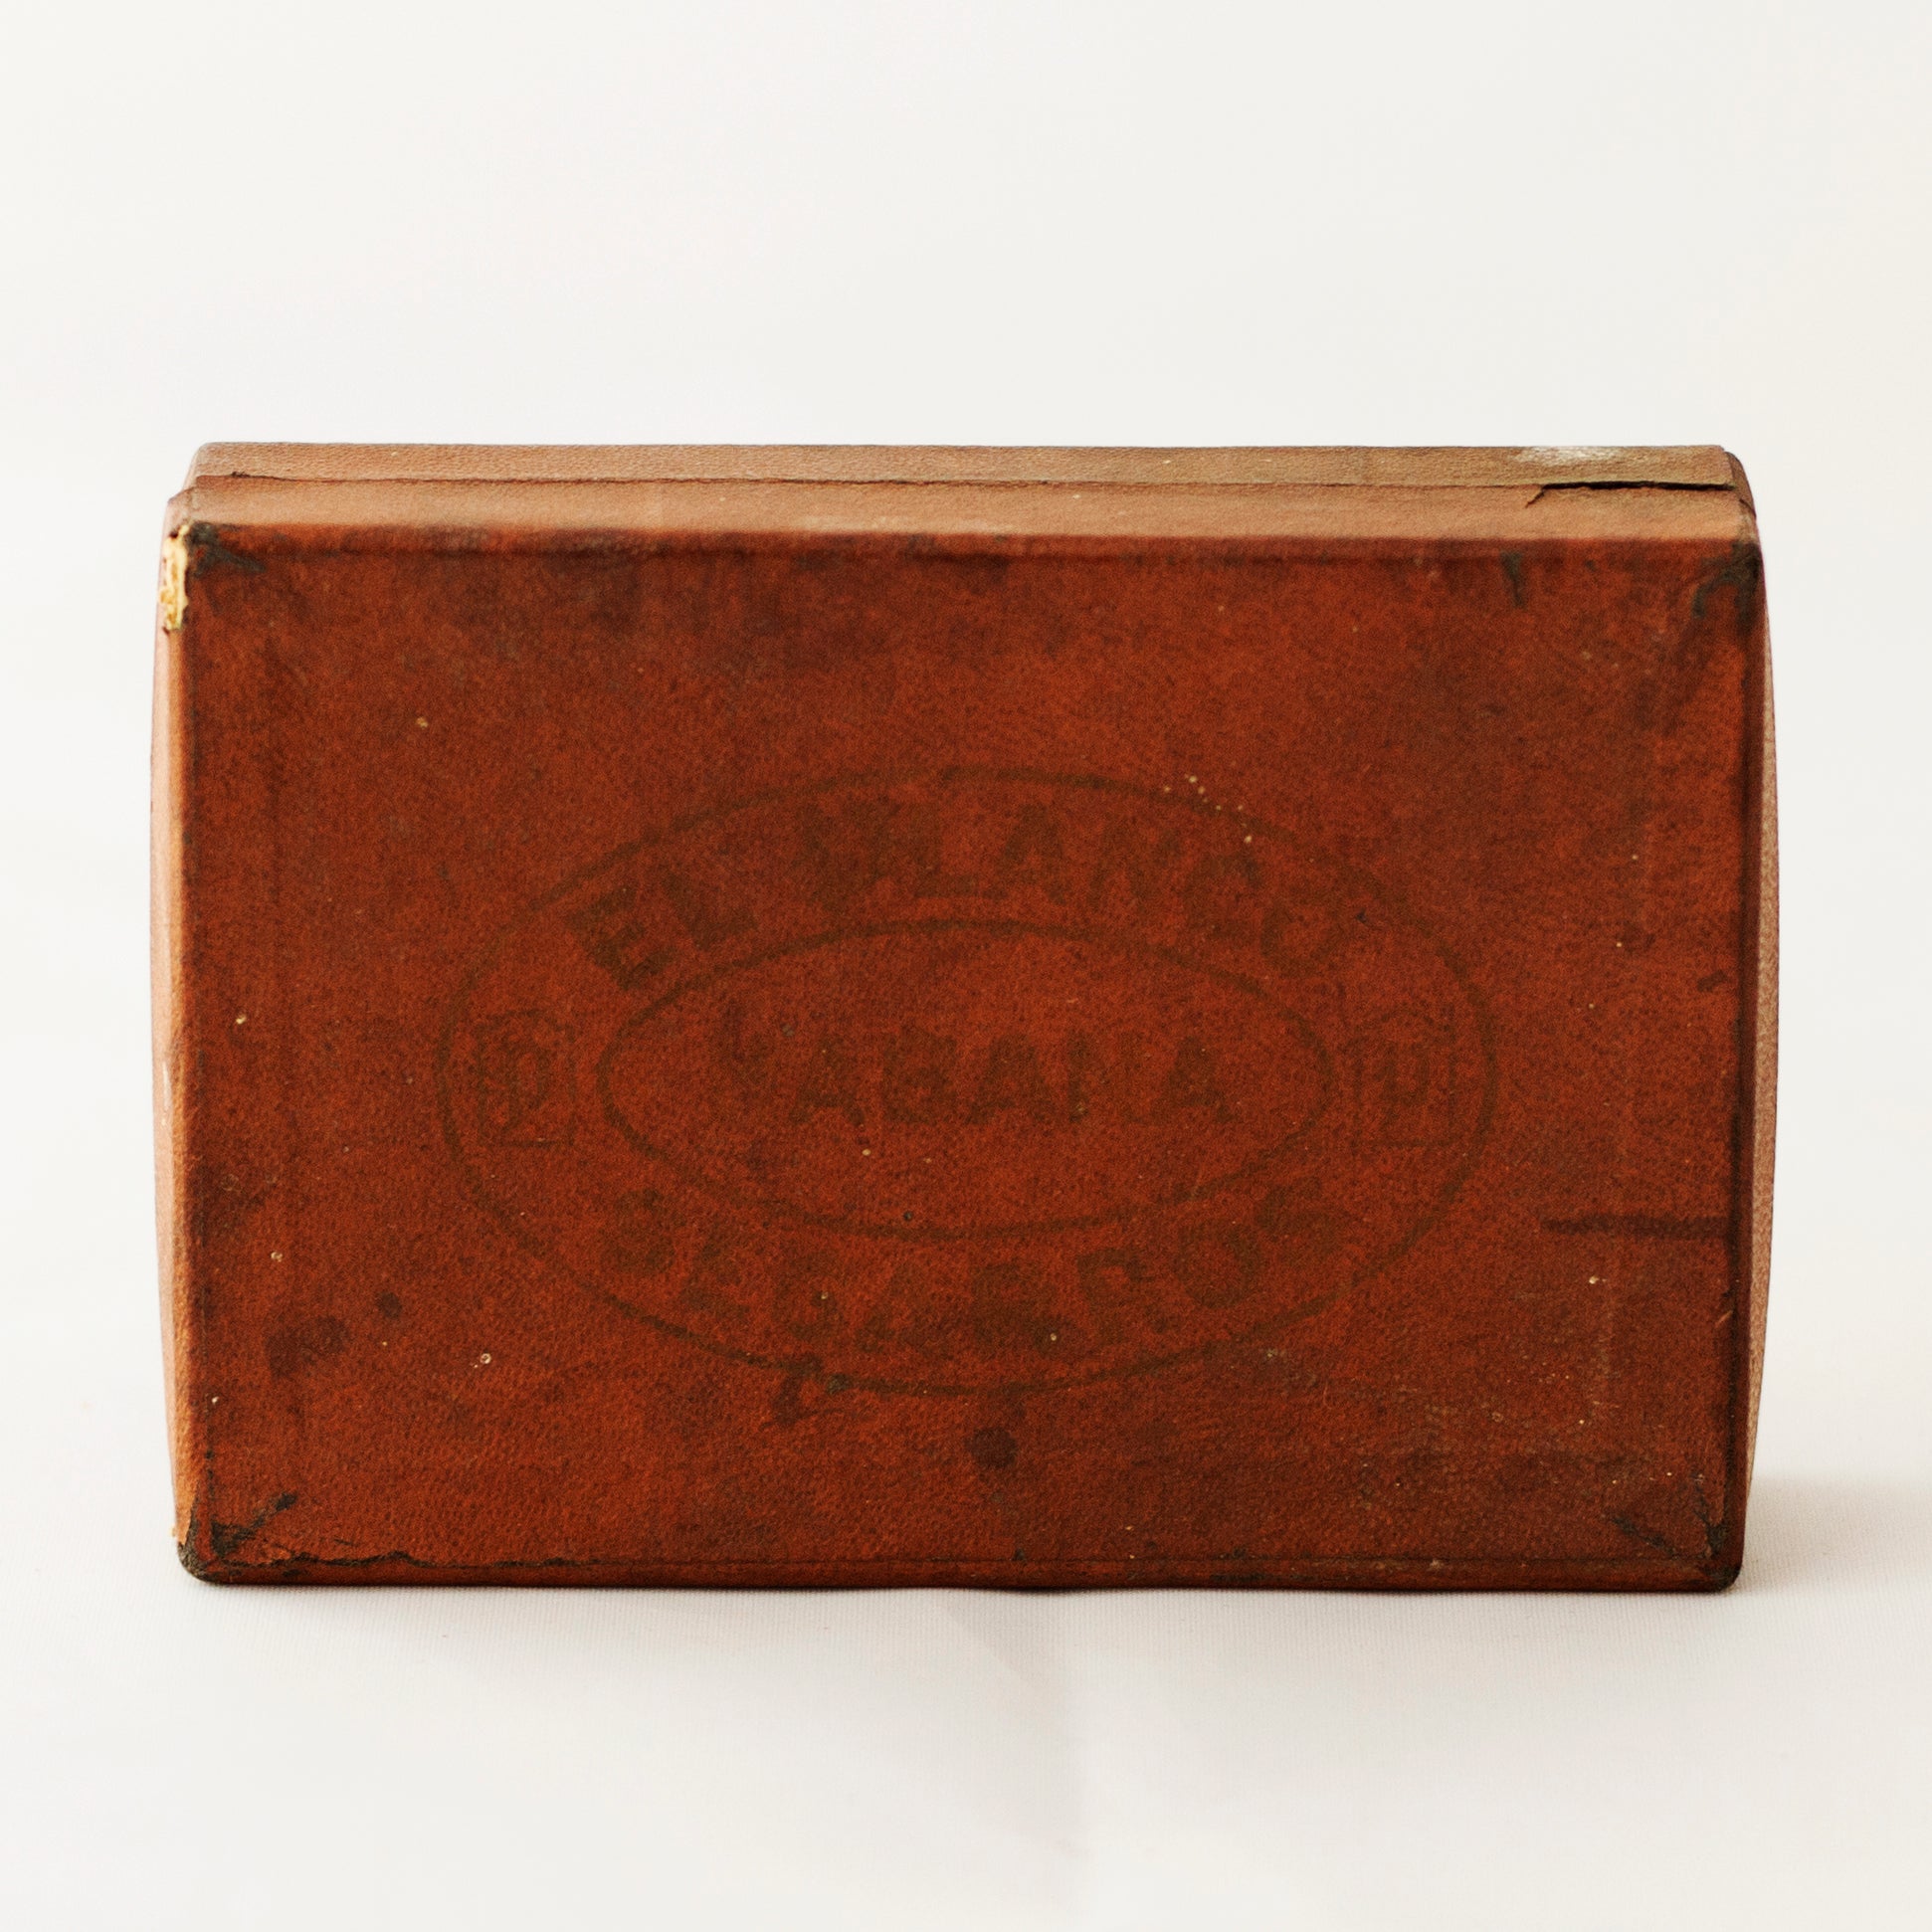 EL PLANCO SEGARROS HABANA CIGAR BOX with Six Gilded Gold Paper Cigar Labels/Bands *Rare* Circa 1910 